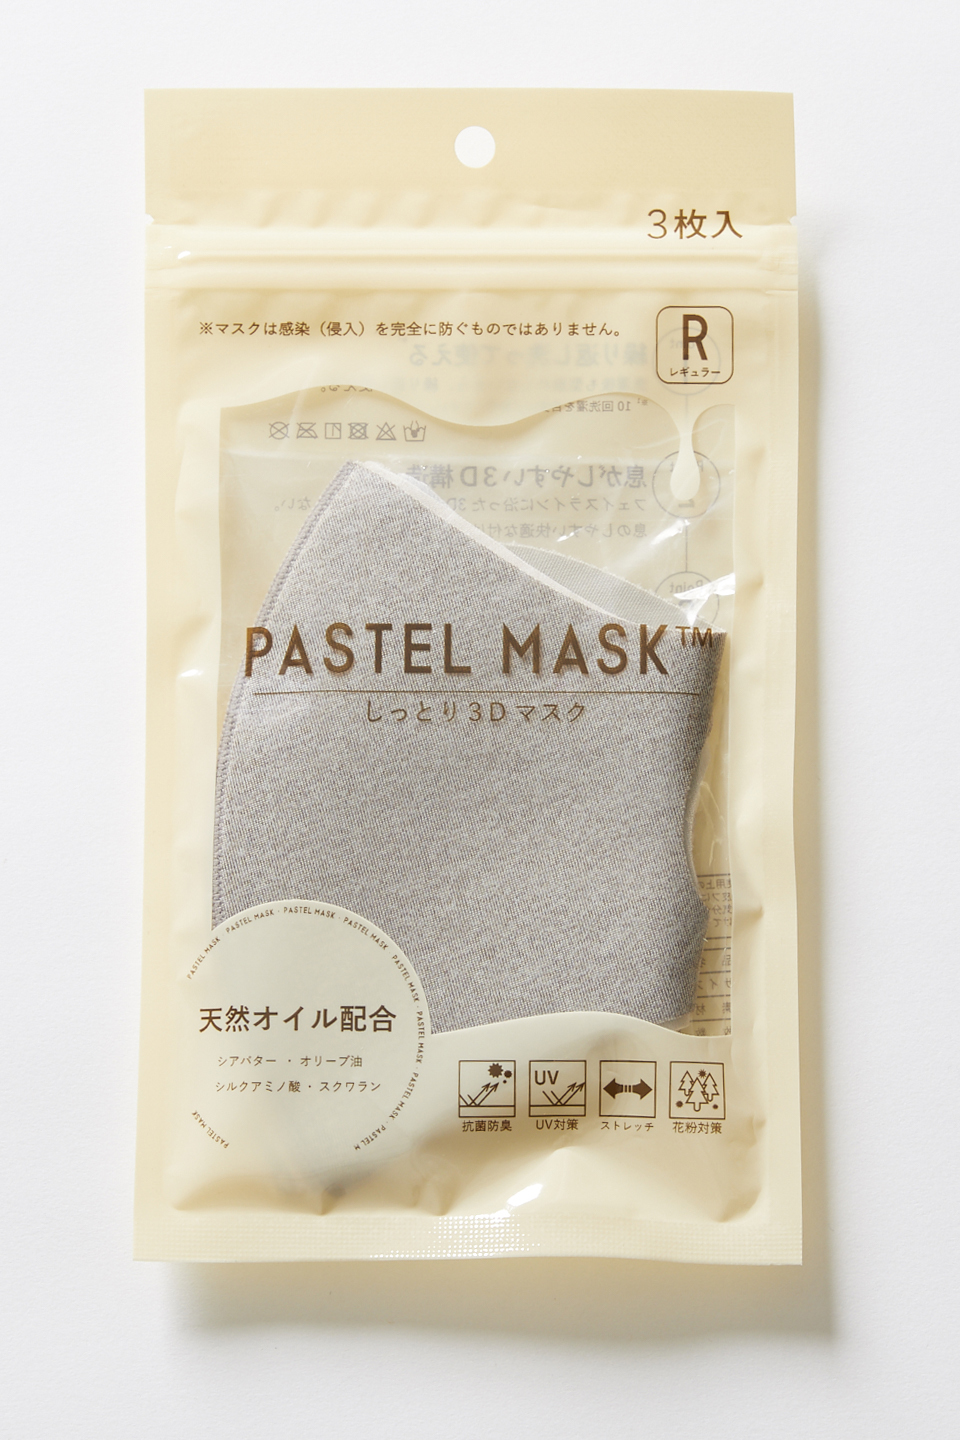 大ヒット中の『洗えるマスク』にイオン共同企画の新製品登場!!「天然